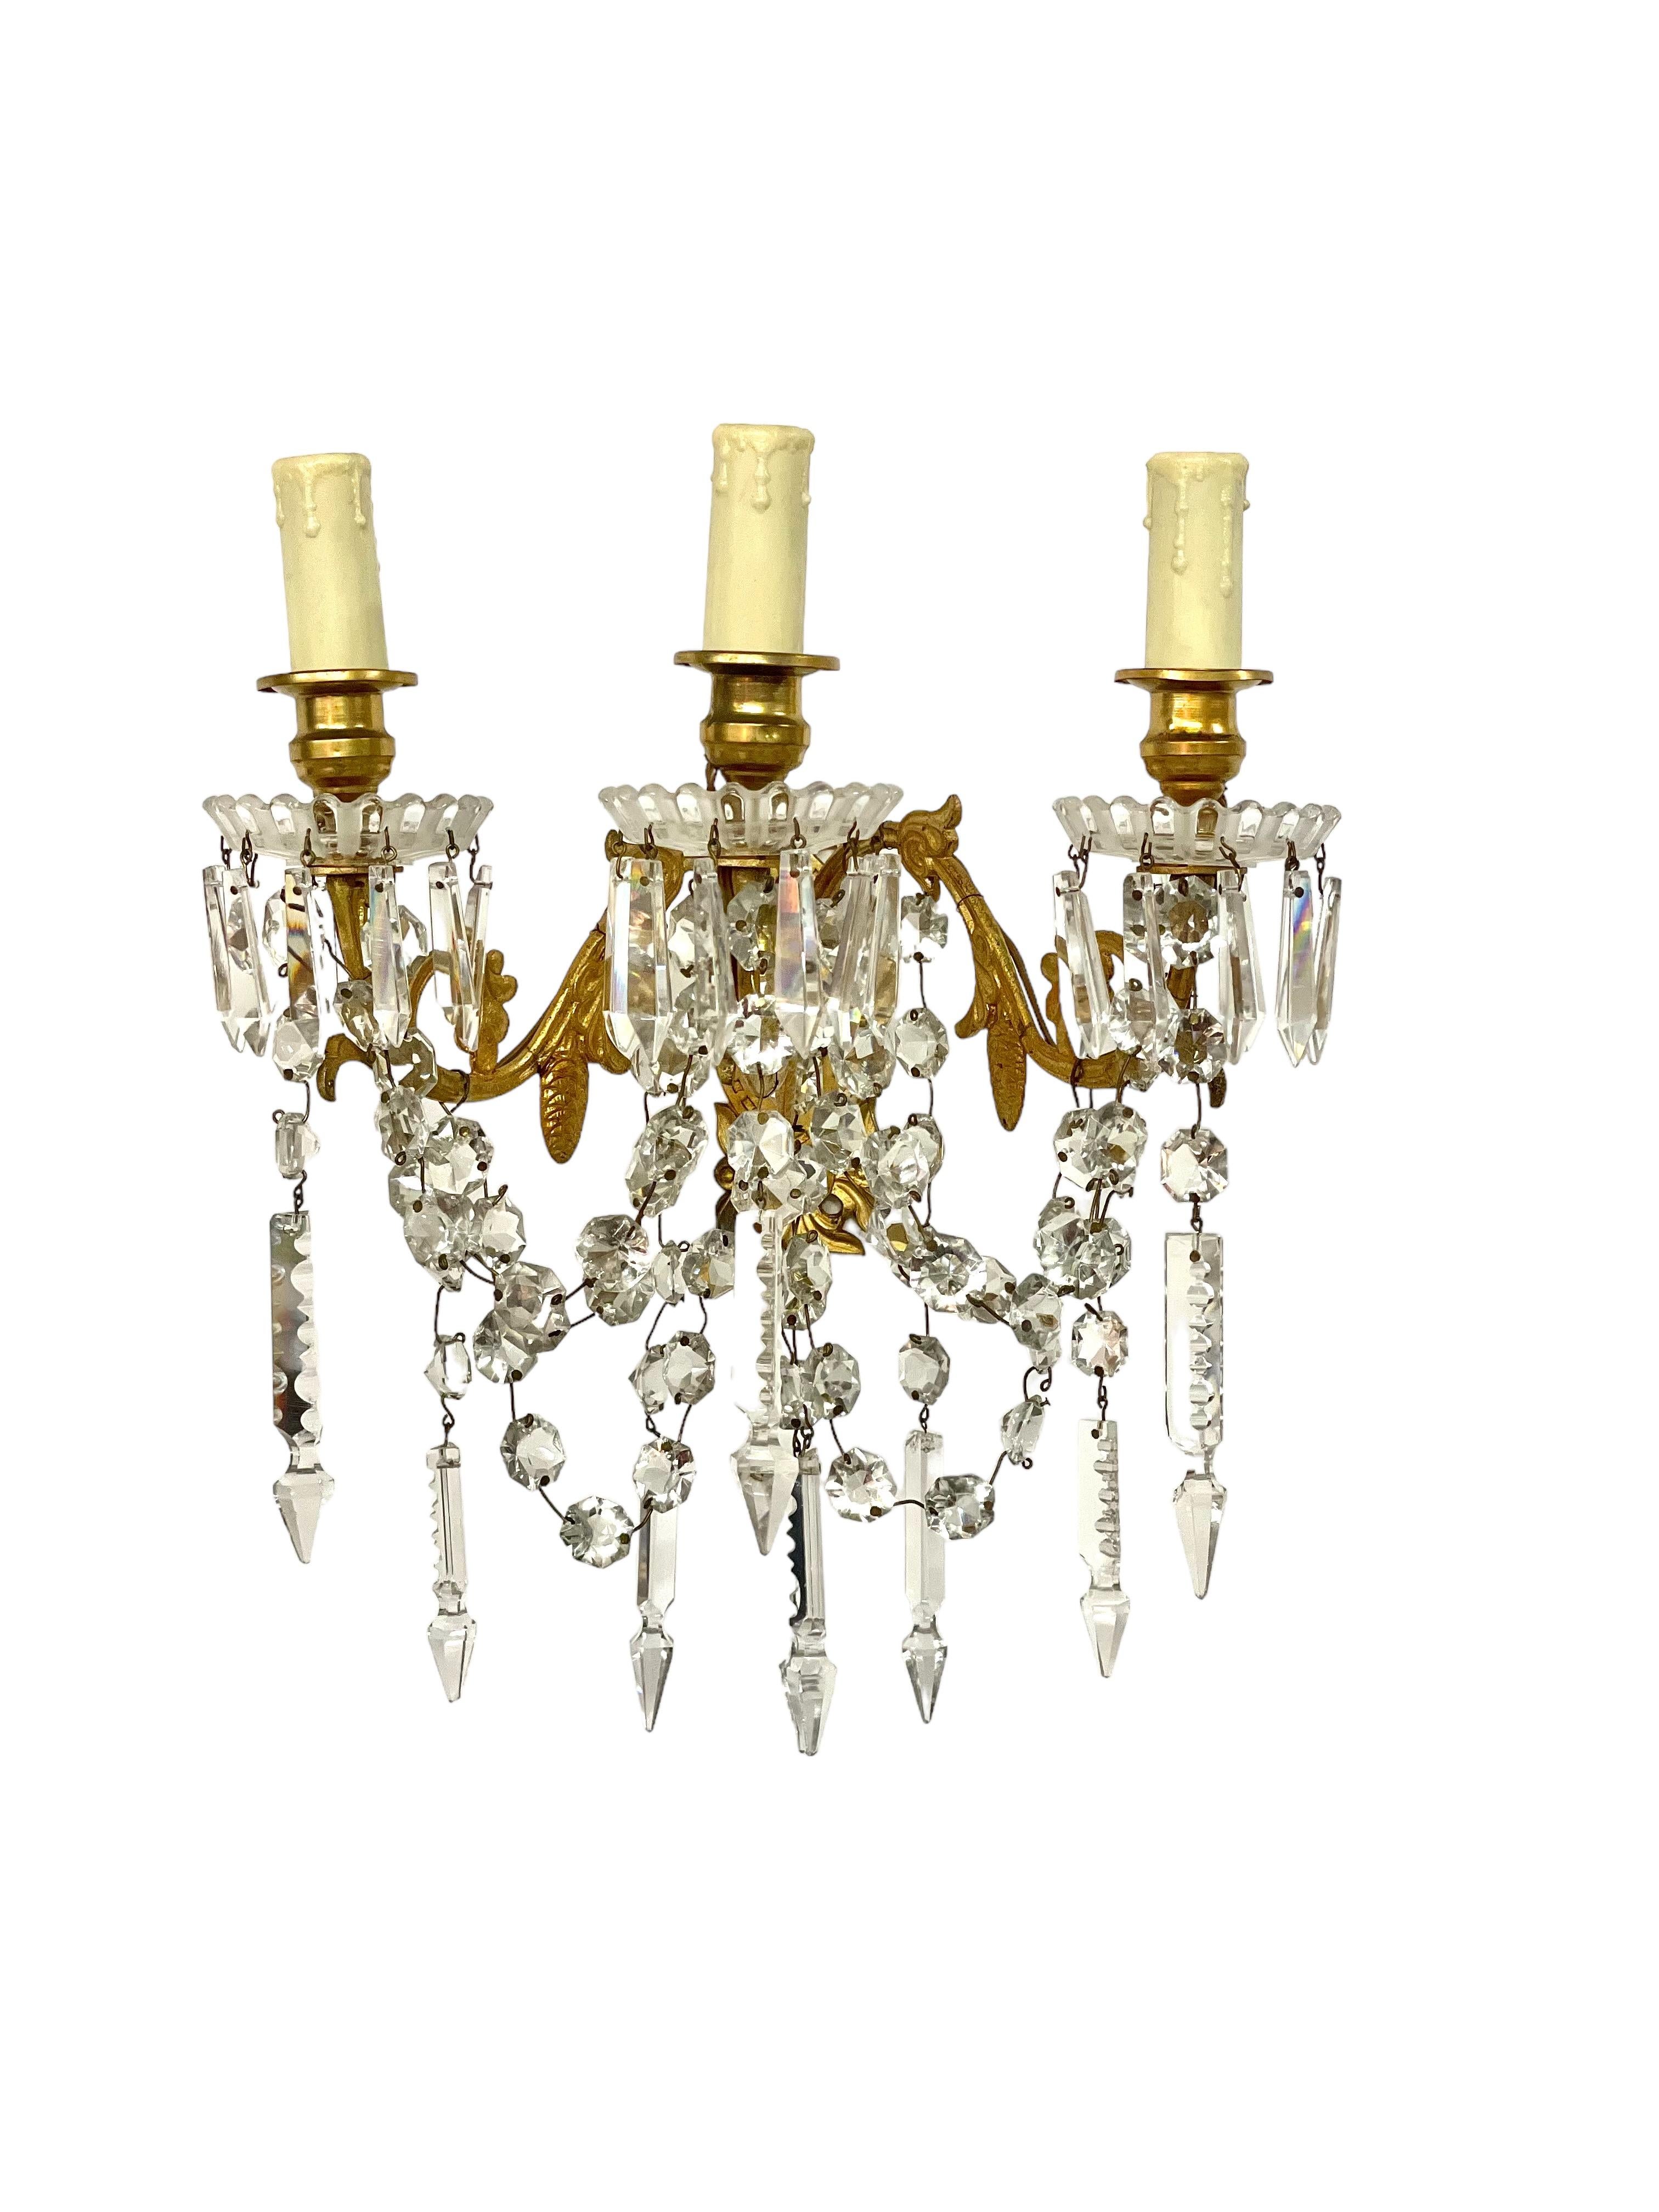 Une paire d'appliques scintillantes à trois bras, fabriquées par le célèbre cristallier Baccarat au XIXe siècle. Ces fabuleuses appliques sont fabriquées en bronze doré et sont ornées de pendentifs en cristal taillé et de guirlandes étincelantes. La